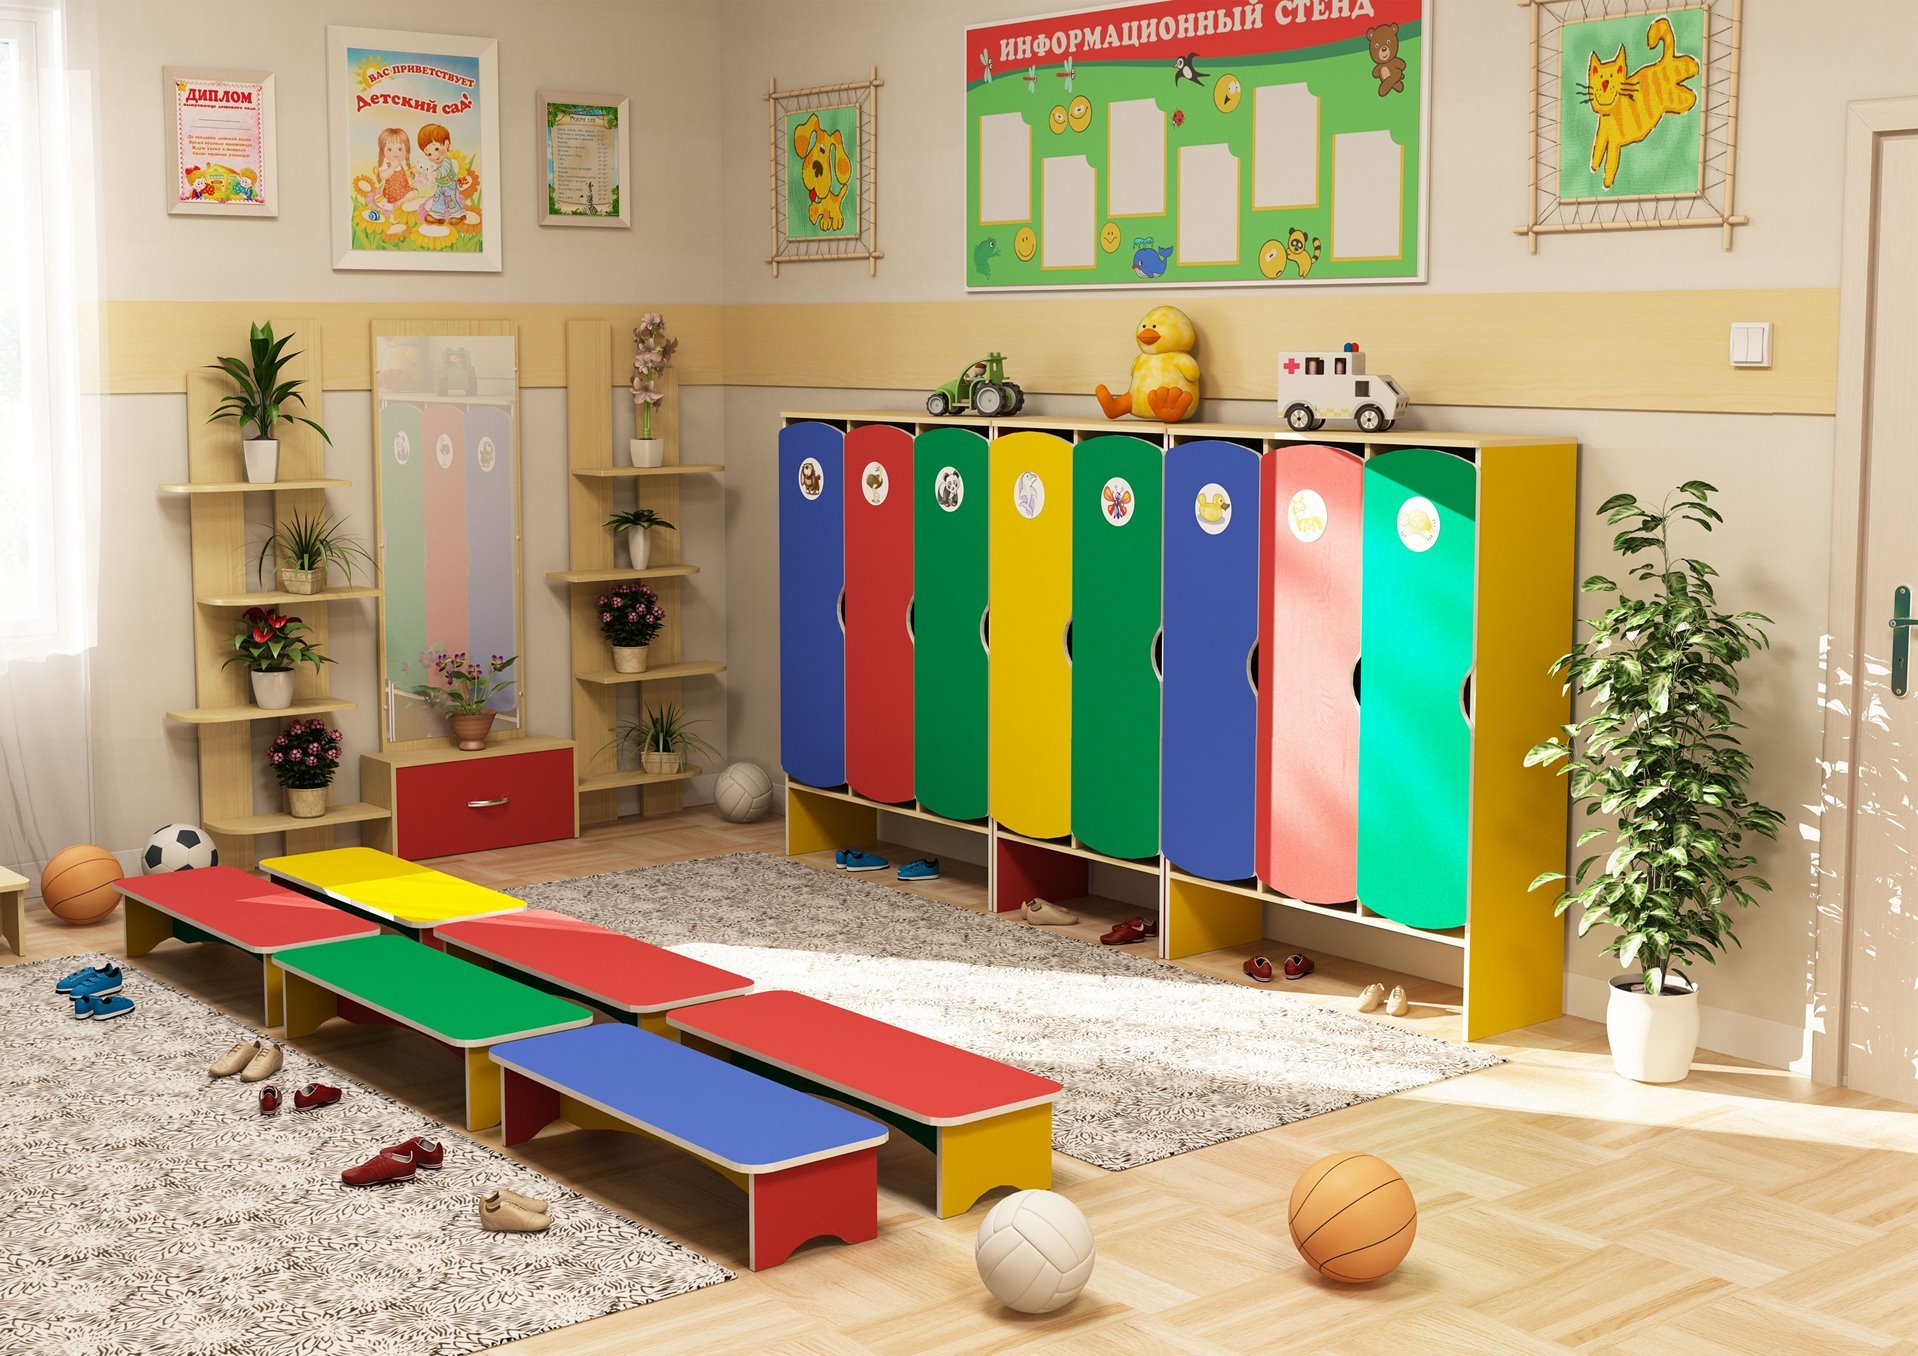 Мебель для детского сада спб. Мебель для детского сада. Мебель для ДОУ. Шкаф для детского сада. Современная мебель для детского сада.